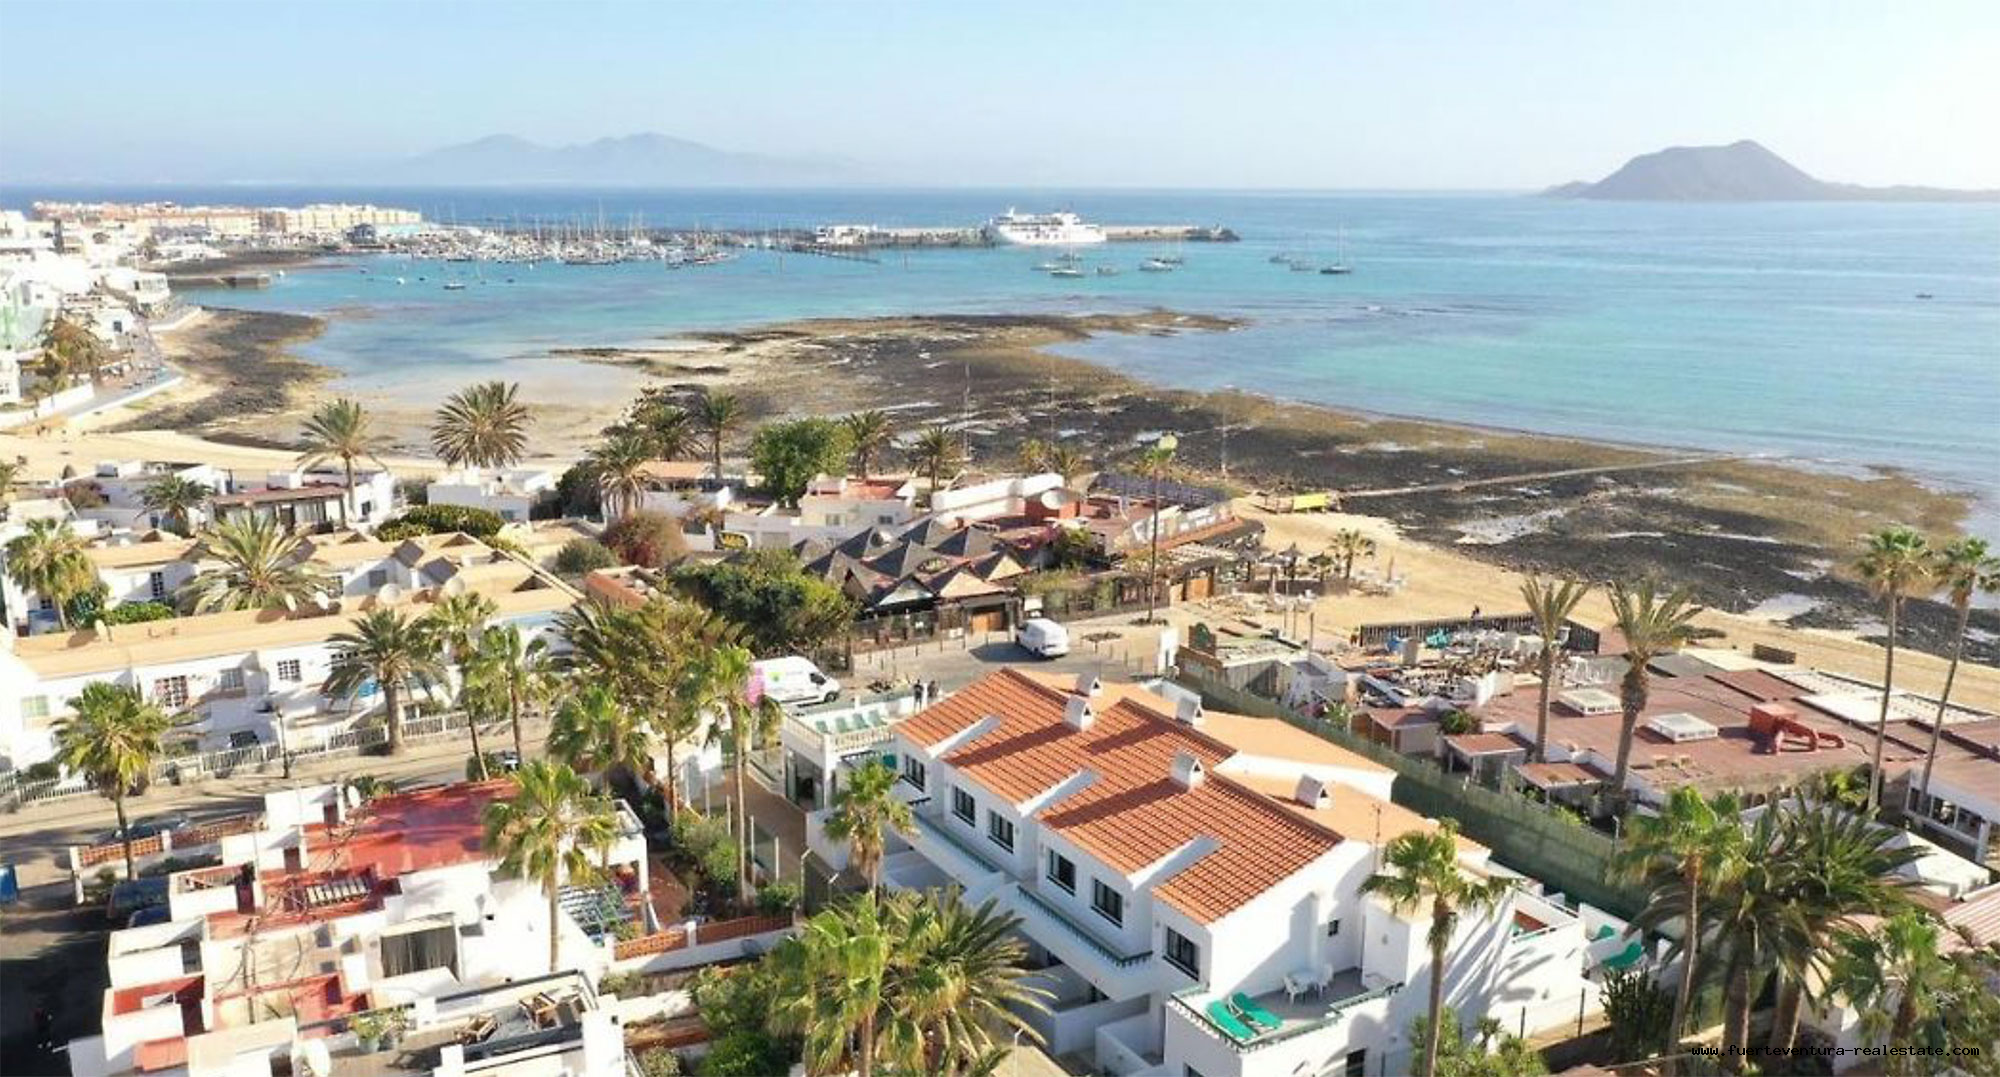 À vendre! Un complexe de vacances avec 14 appartements et piscine à Corralejo, Fuerteventura !